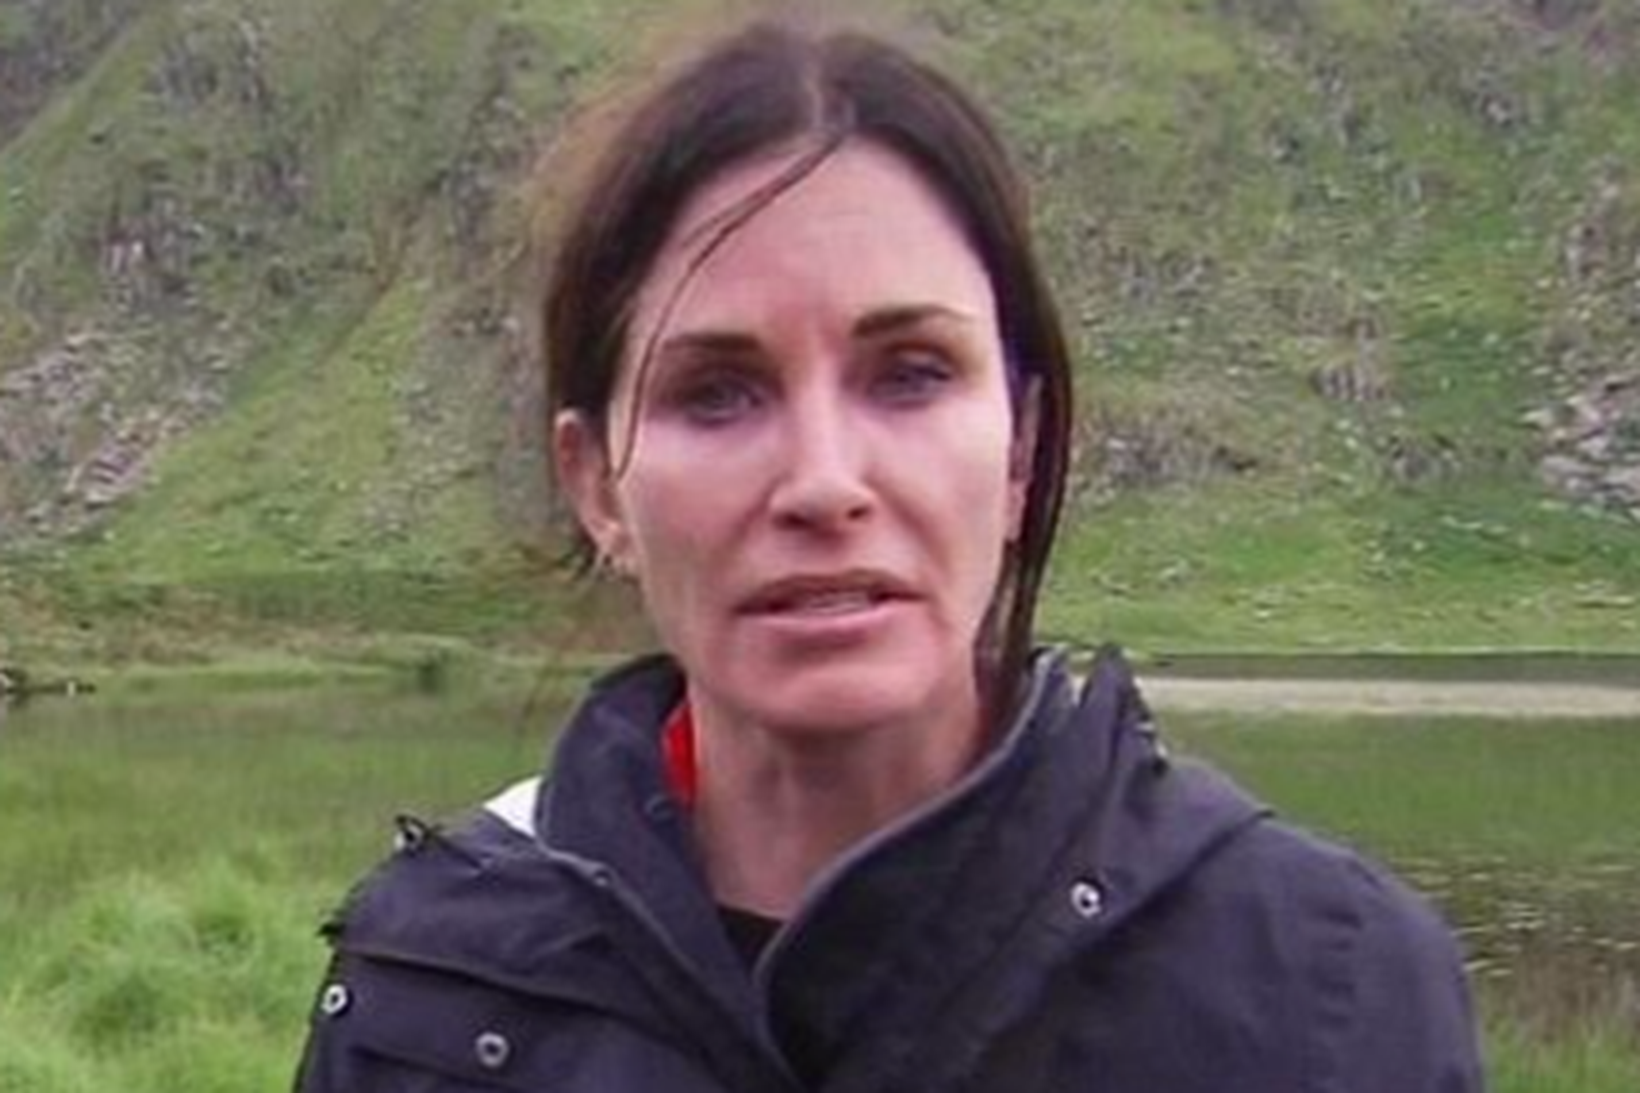 Courtney Cox viðurkennir að fegrunaraðgerðir séu ekki málið.